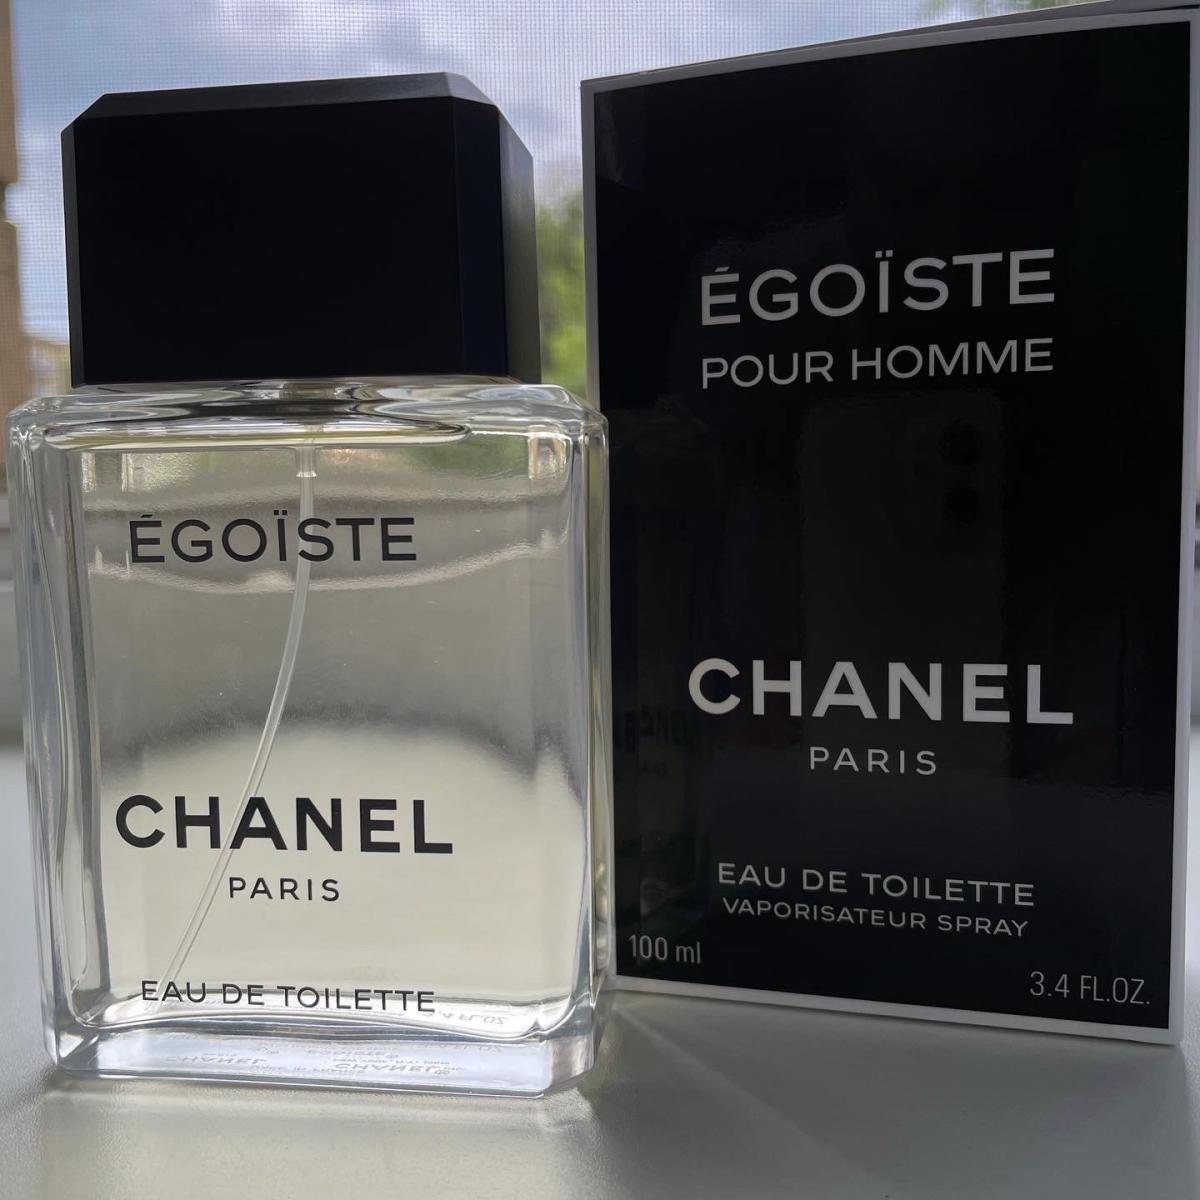 Platinum Egoiste pour homme Chanel Paris